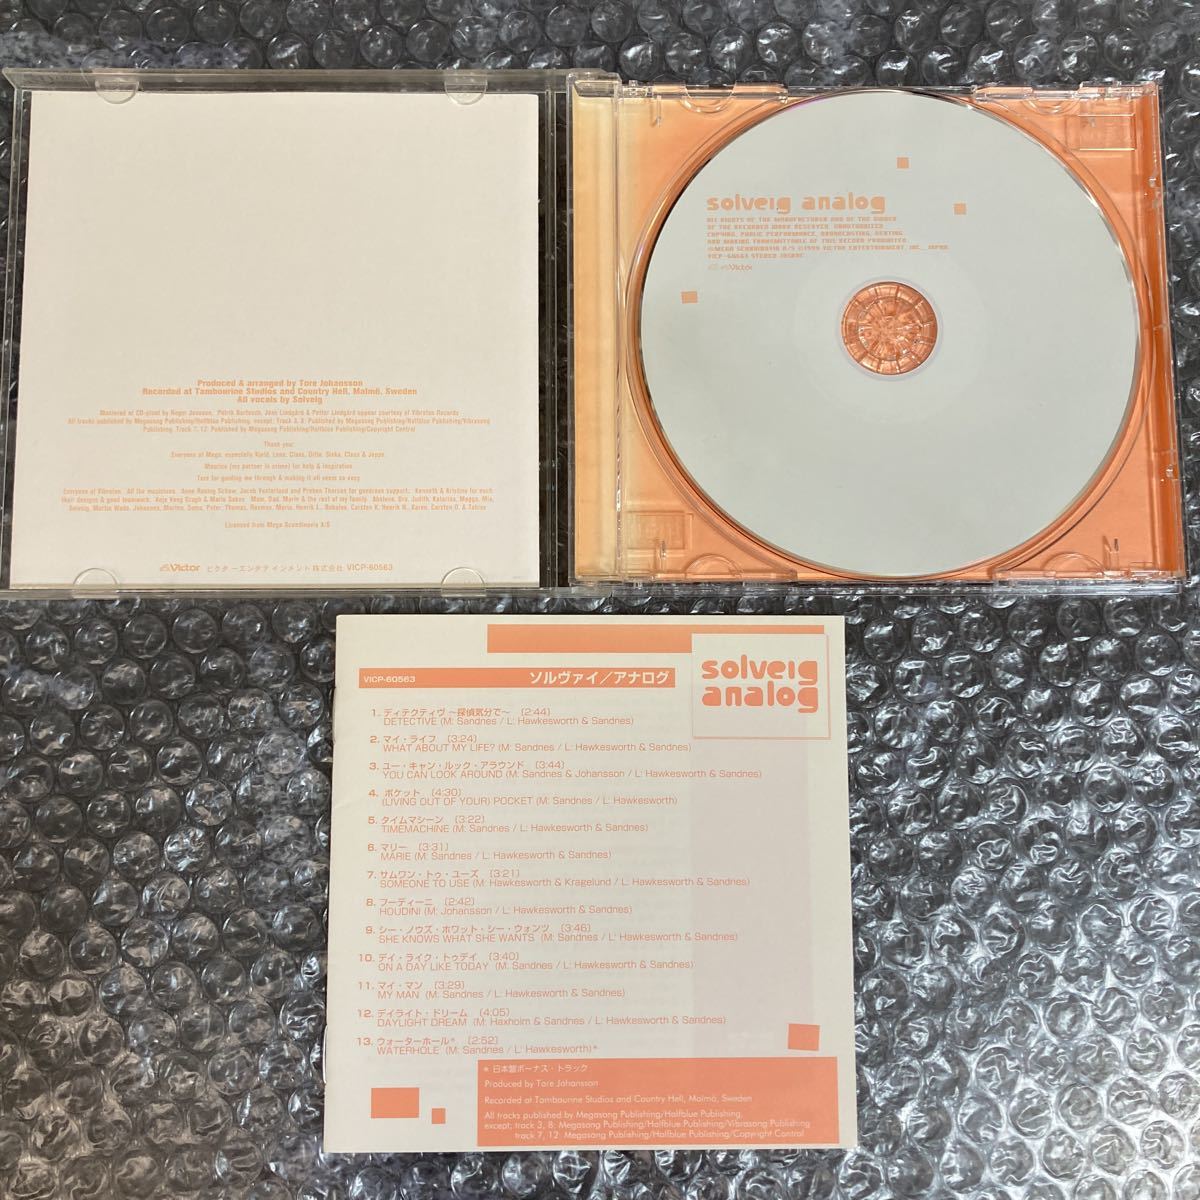 CD ソルヴァイ/アナログ solveig/analog 国内盤 日本語歌詞付き